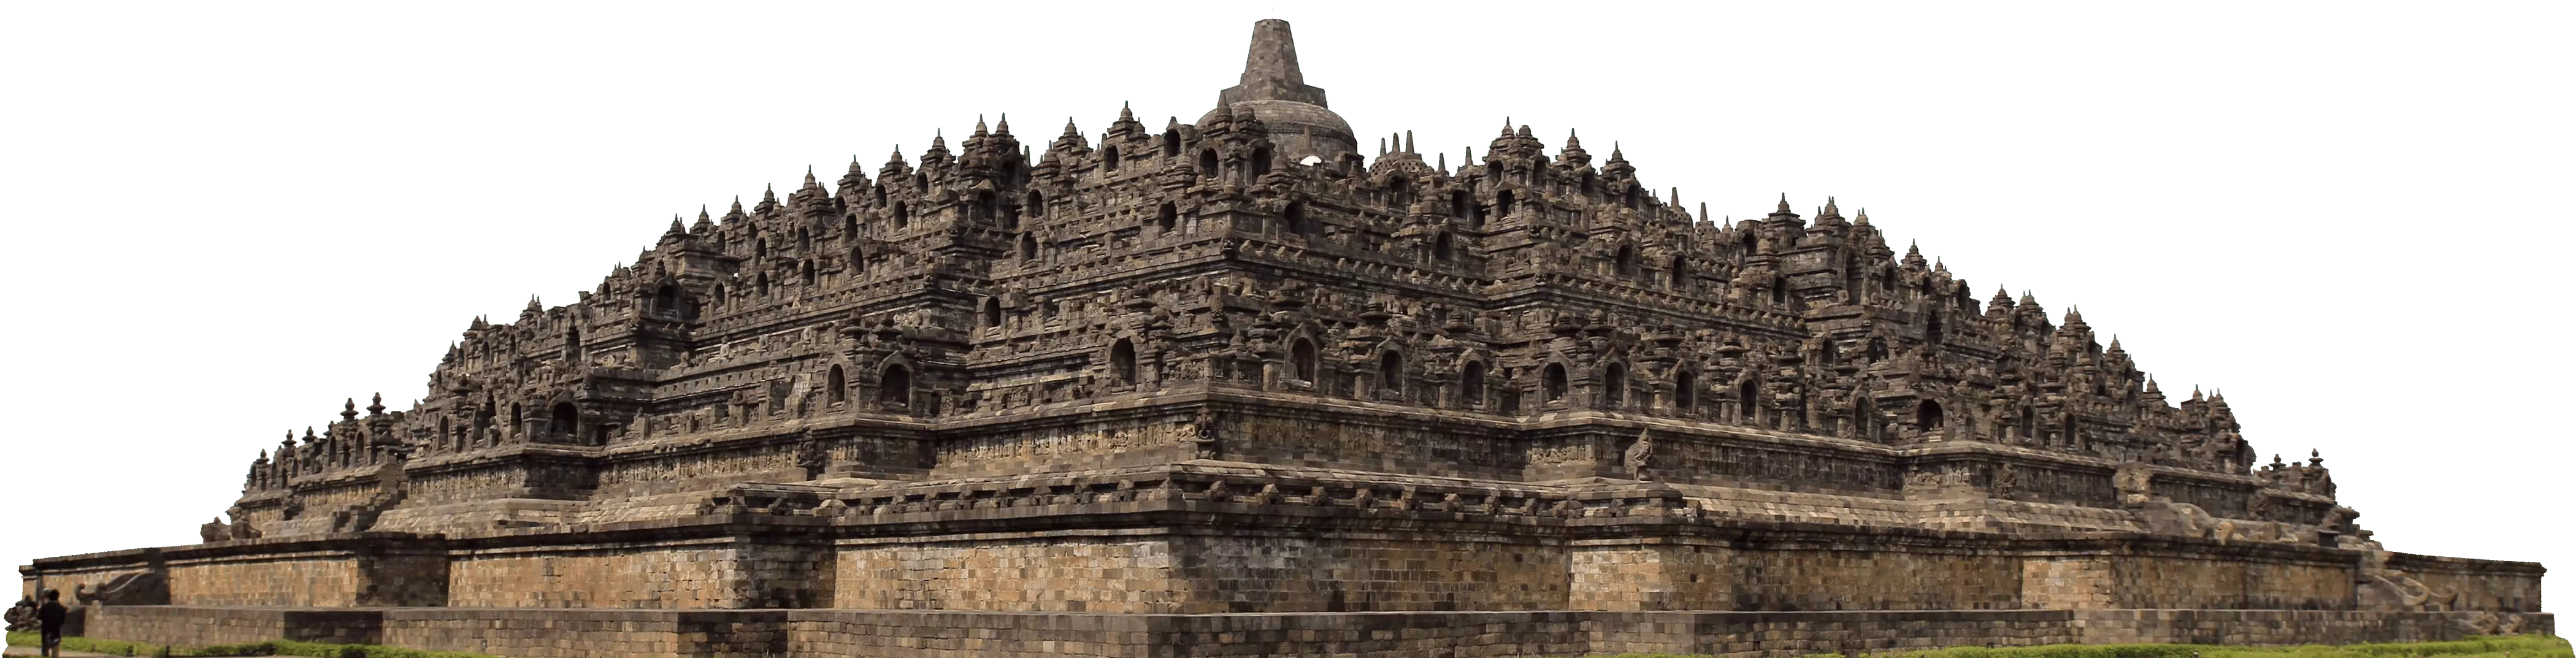 Borobudur Temple, Shailendra Dynasty